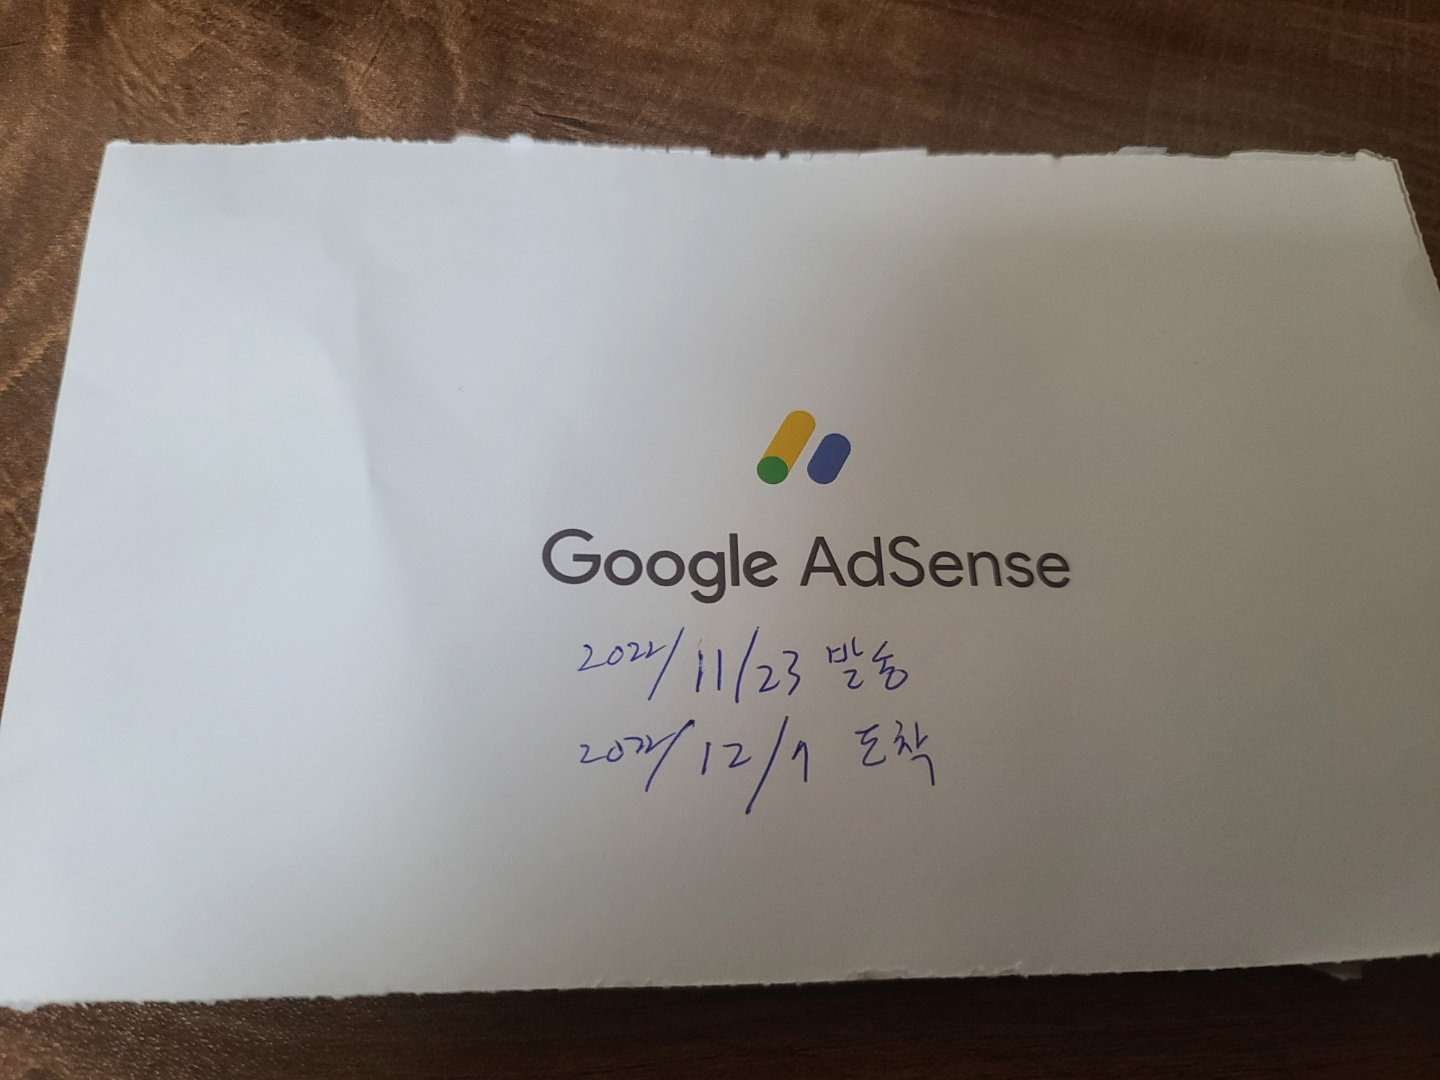 구글 애드센스가 보낸 우편물 표지